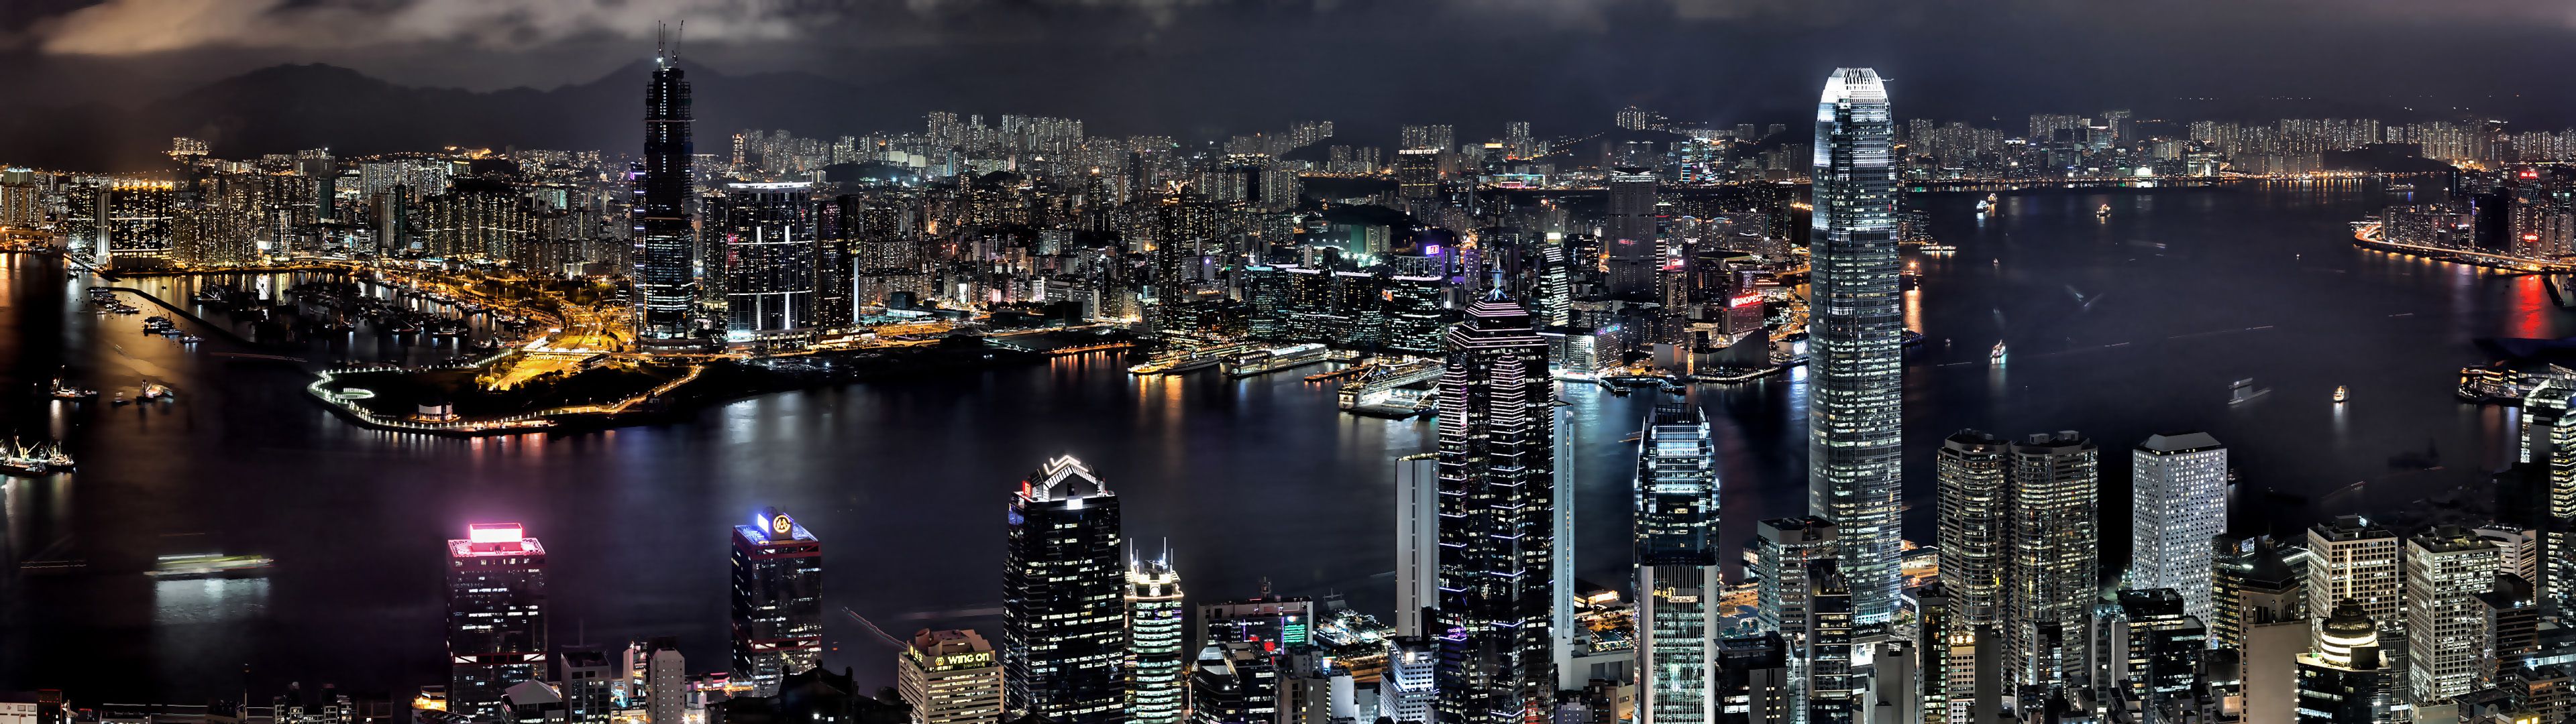 Cityscapes night buildings Hong Kong wallpaper | 3840x1080 | 61374 ...